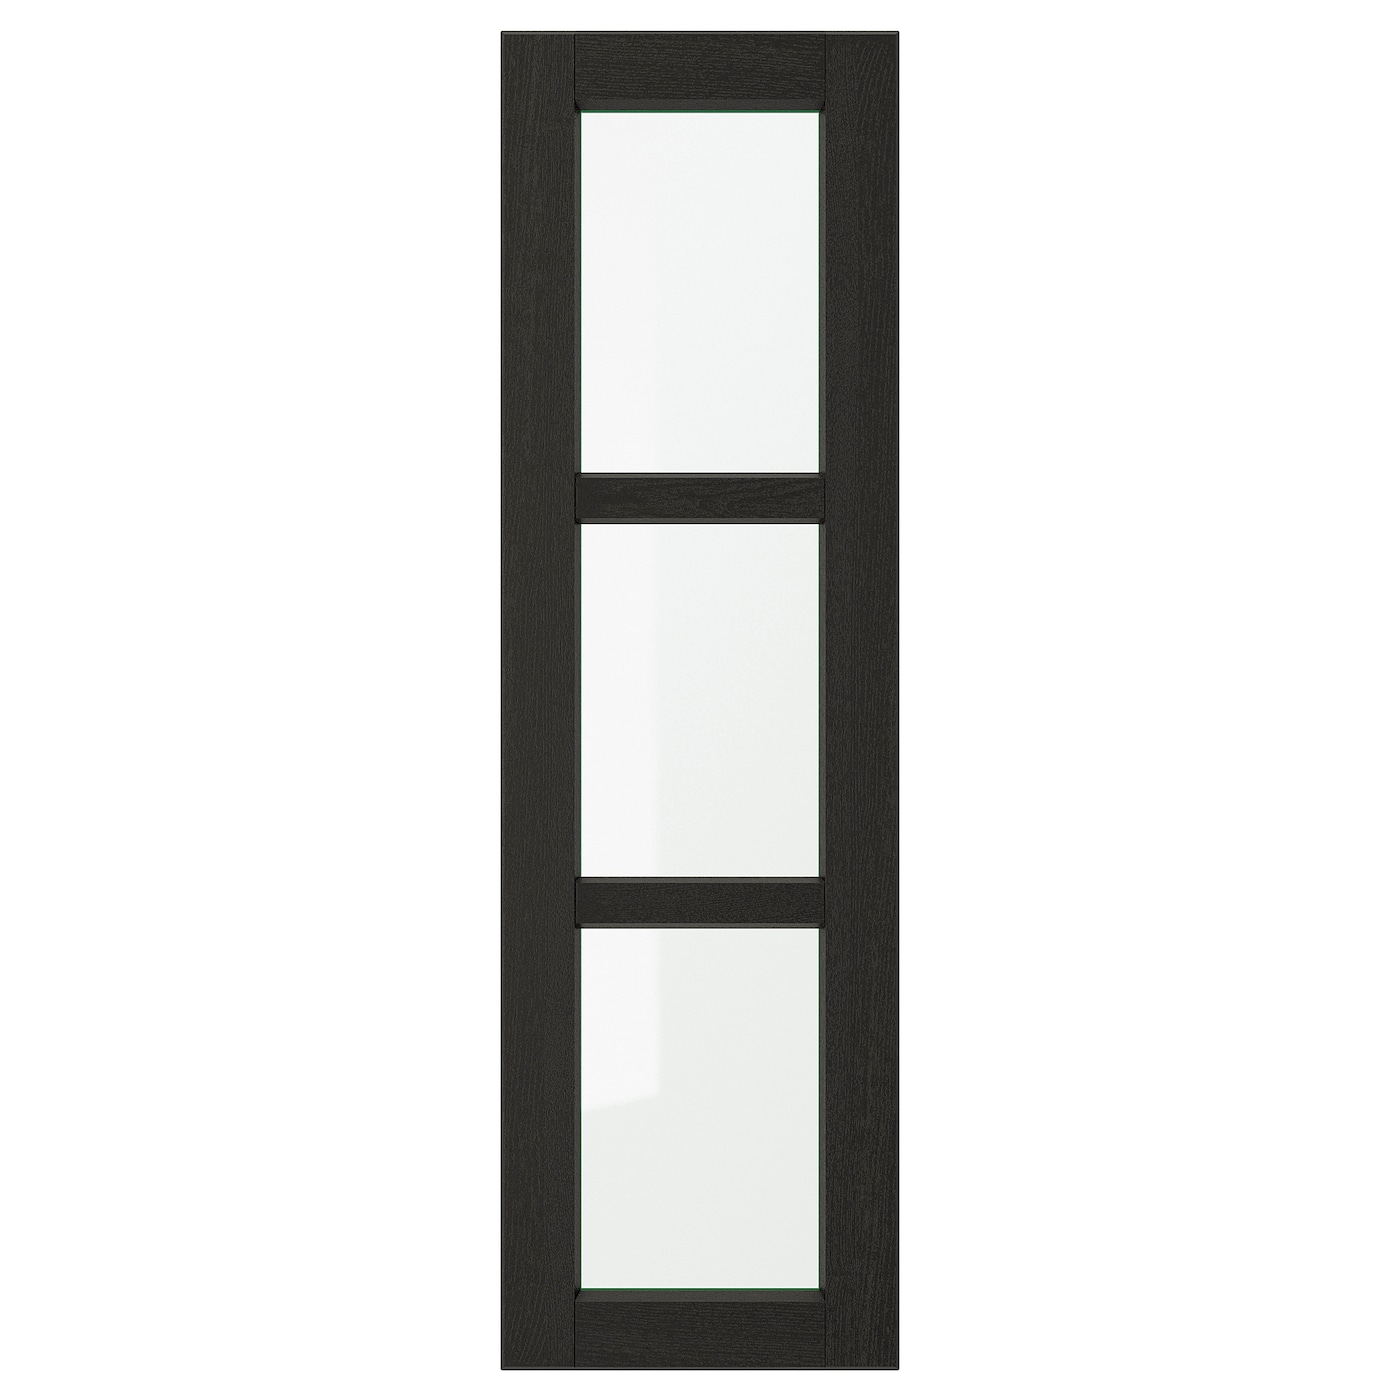 Дверца со стеклом - IKEA LERHYTTAN, 100х30 см, черный, ЛЕРХЮТТАН ИКЕА